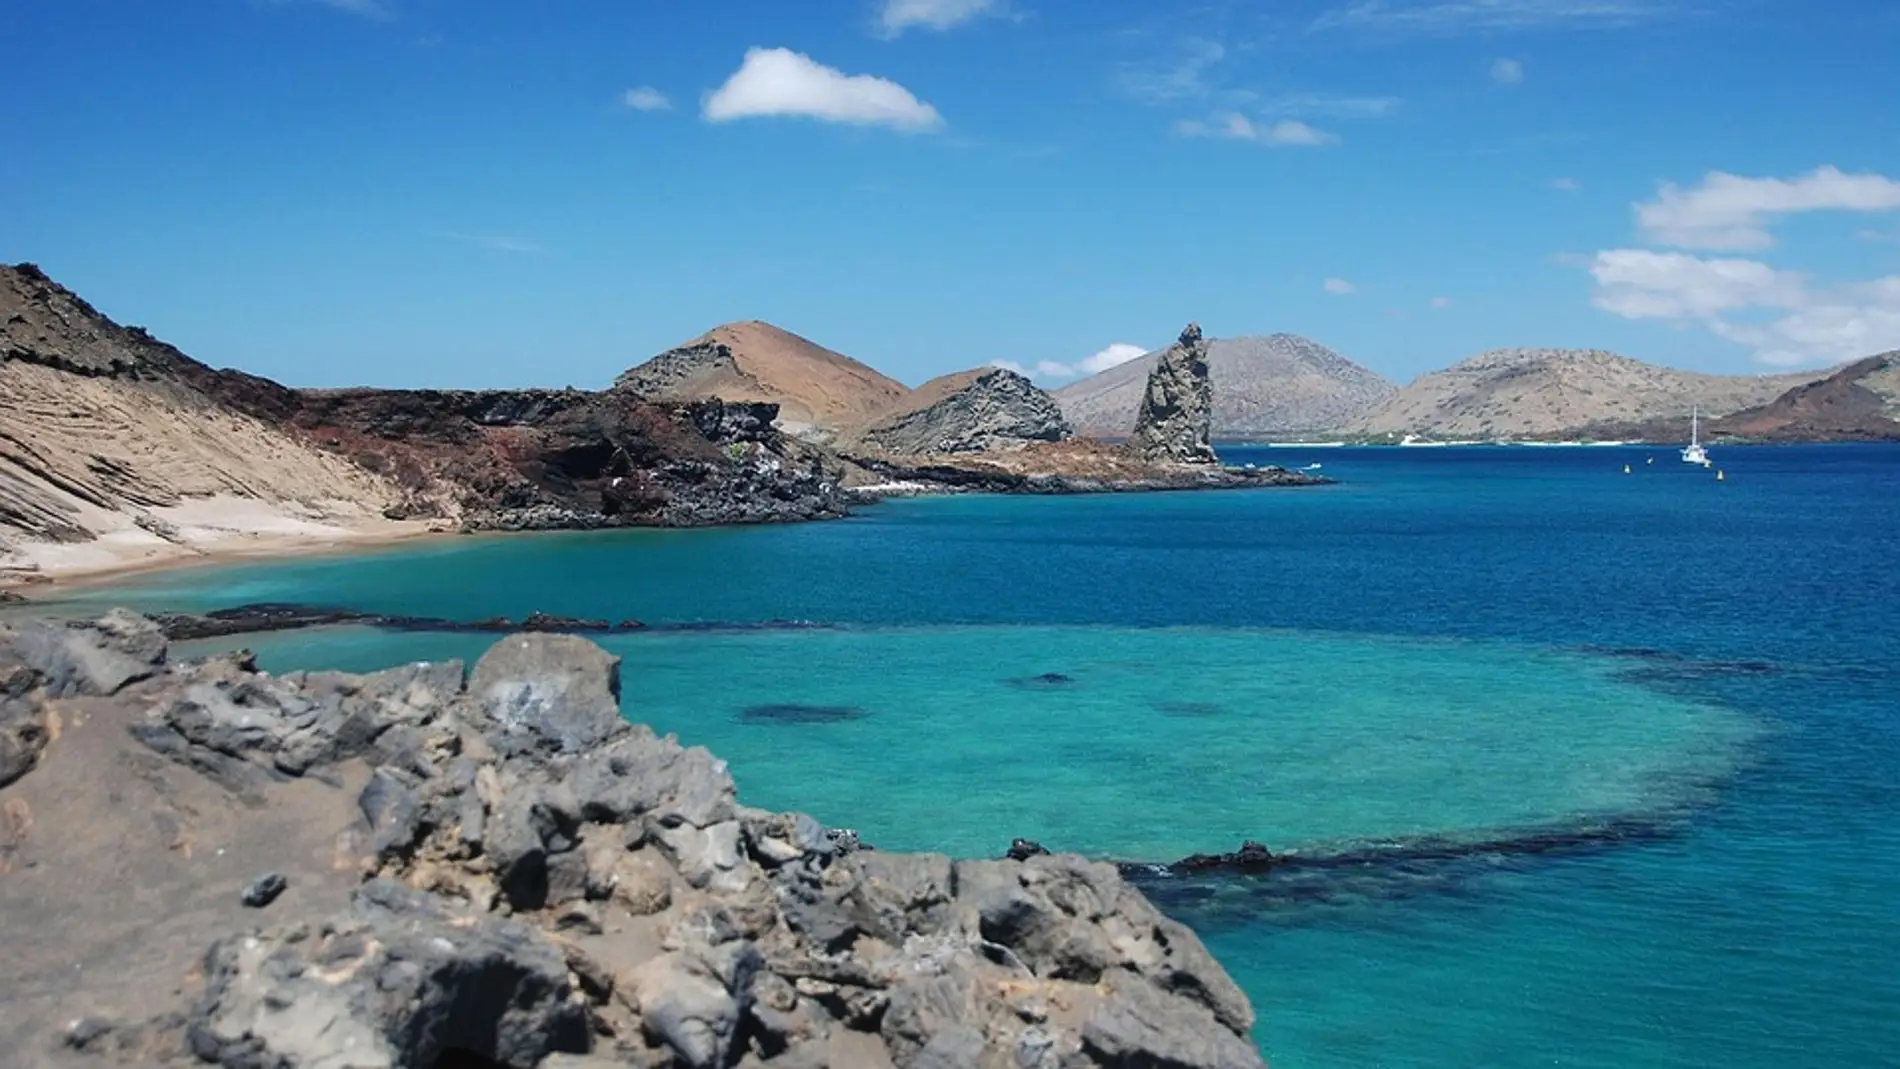 Islas Galápagos, el lugar que visitó Darwin para estudiar la evolución de su fauna y flora